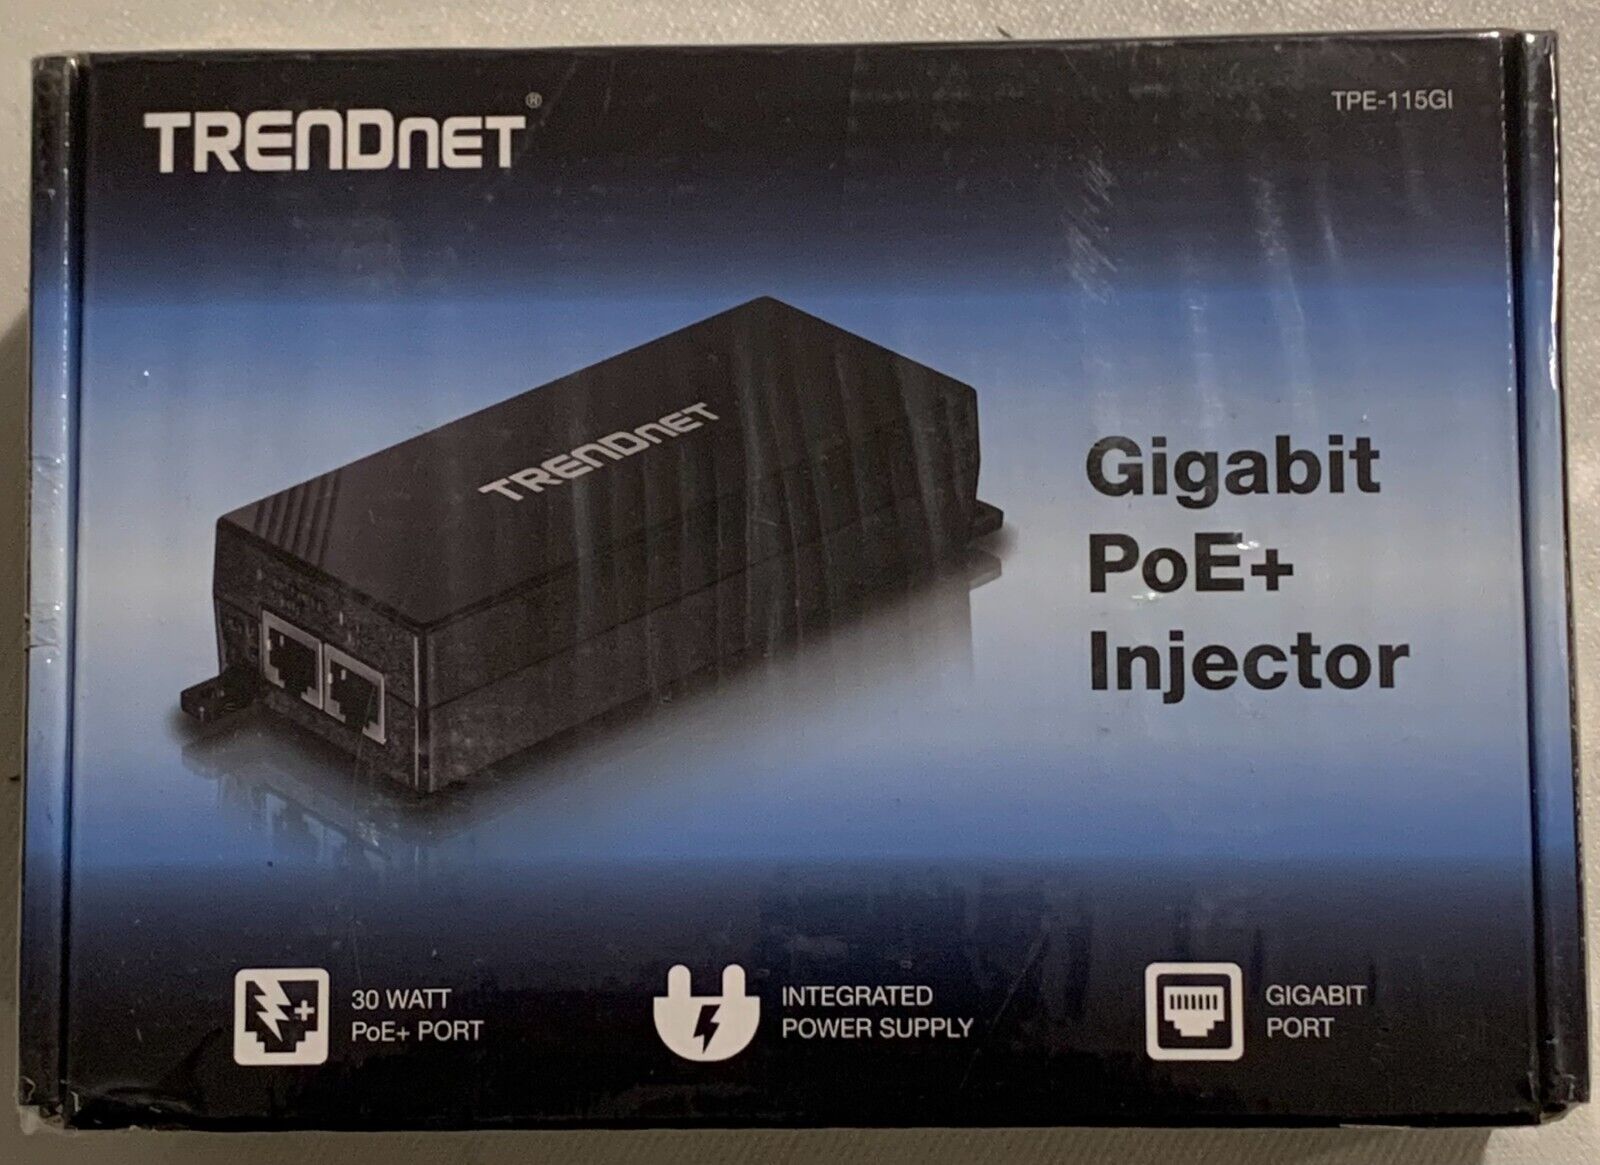 TRENDnet TPE-115GI Gigabit PoE+ Injector